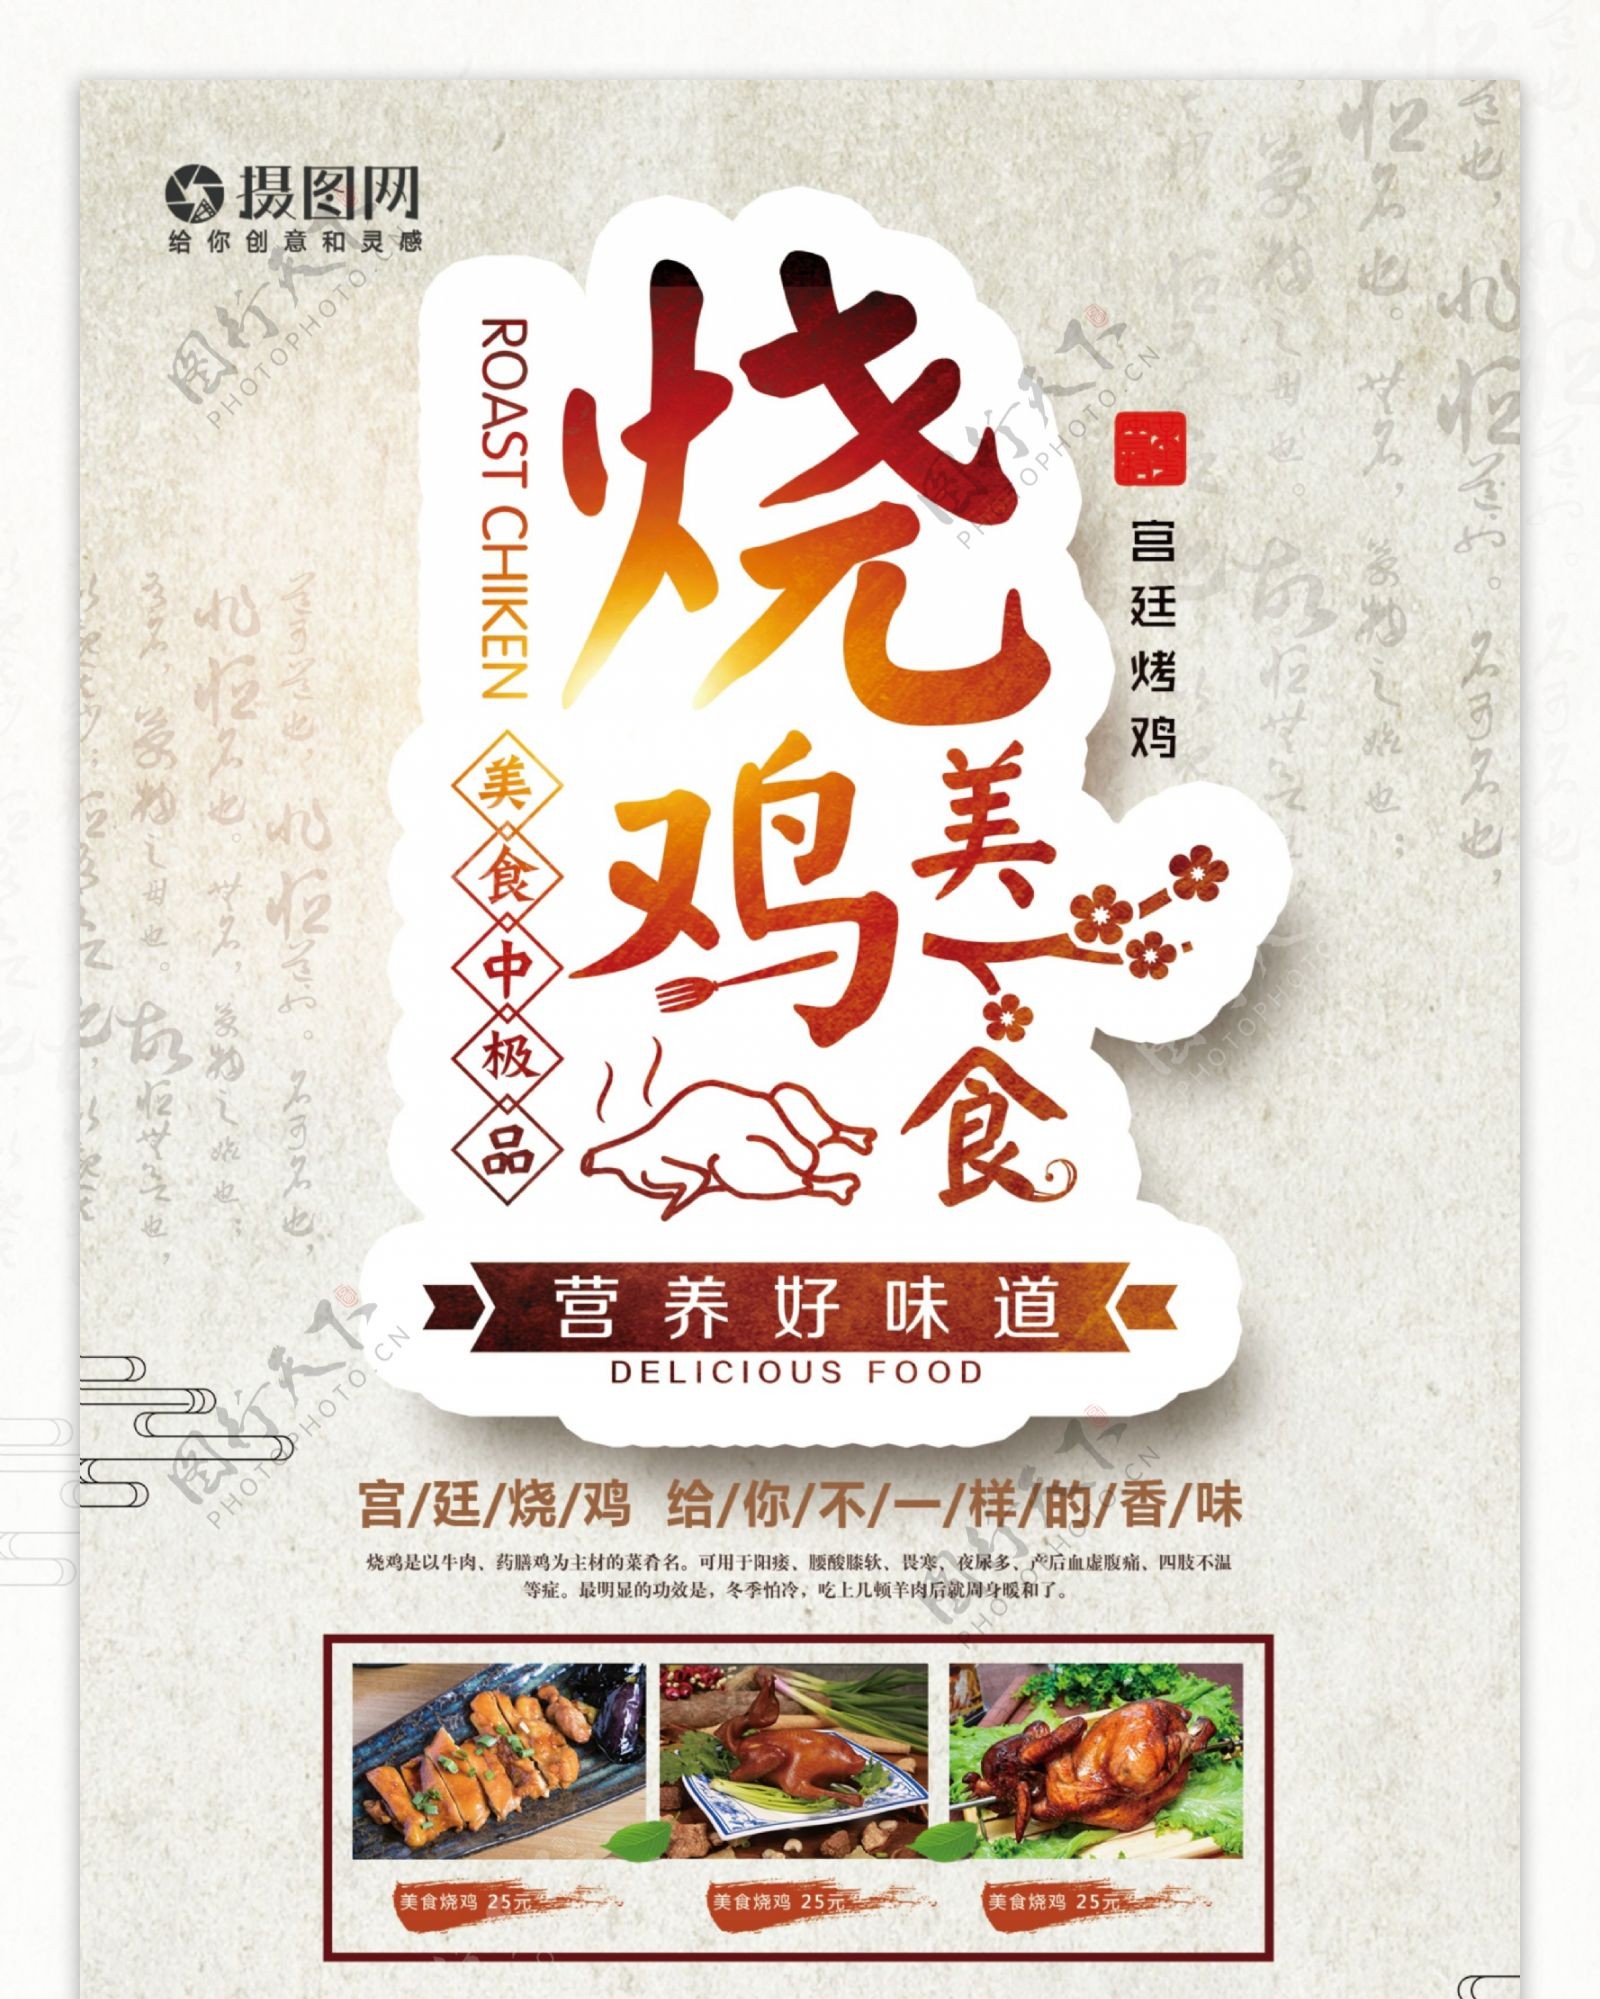 大气中国风烧鸡烤鸡美食餐饮活动促销宣传X展架易拉宝